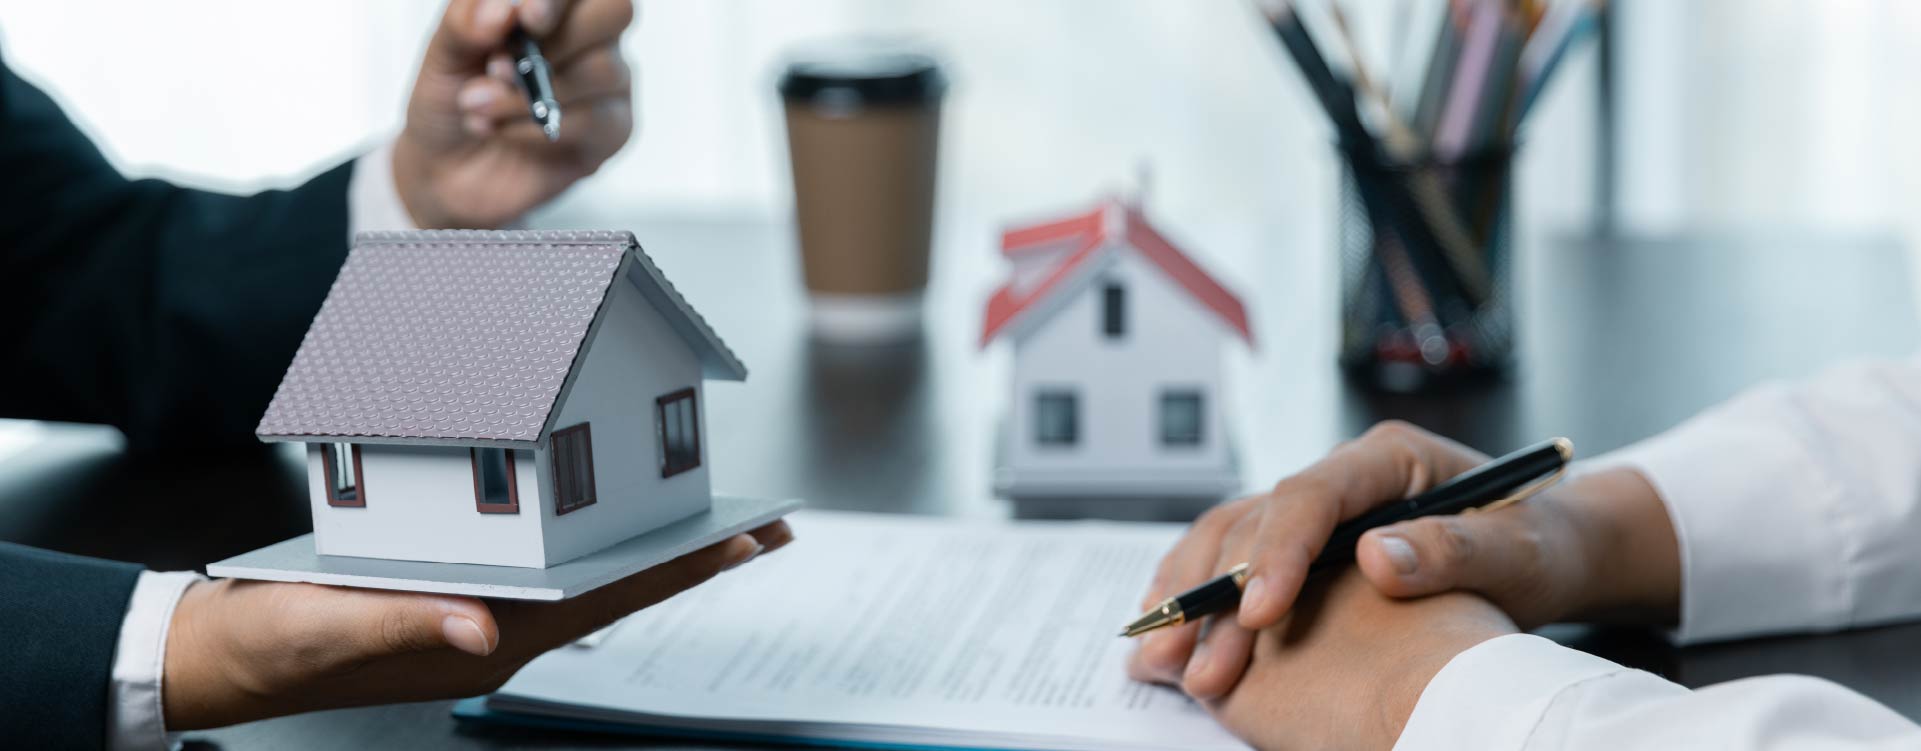 Comparar propostas de crédito habitação é uma etapa crucial para quem está a planear adquirir um imóvel.